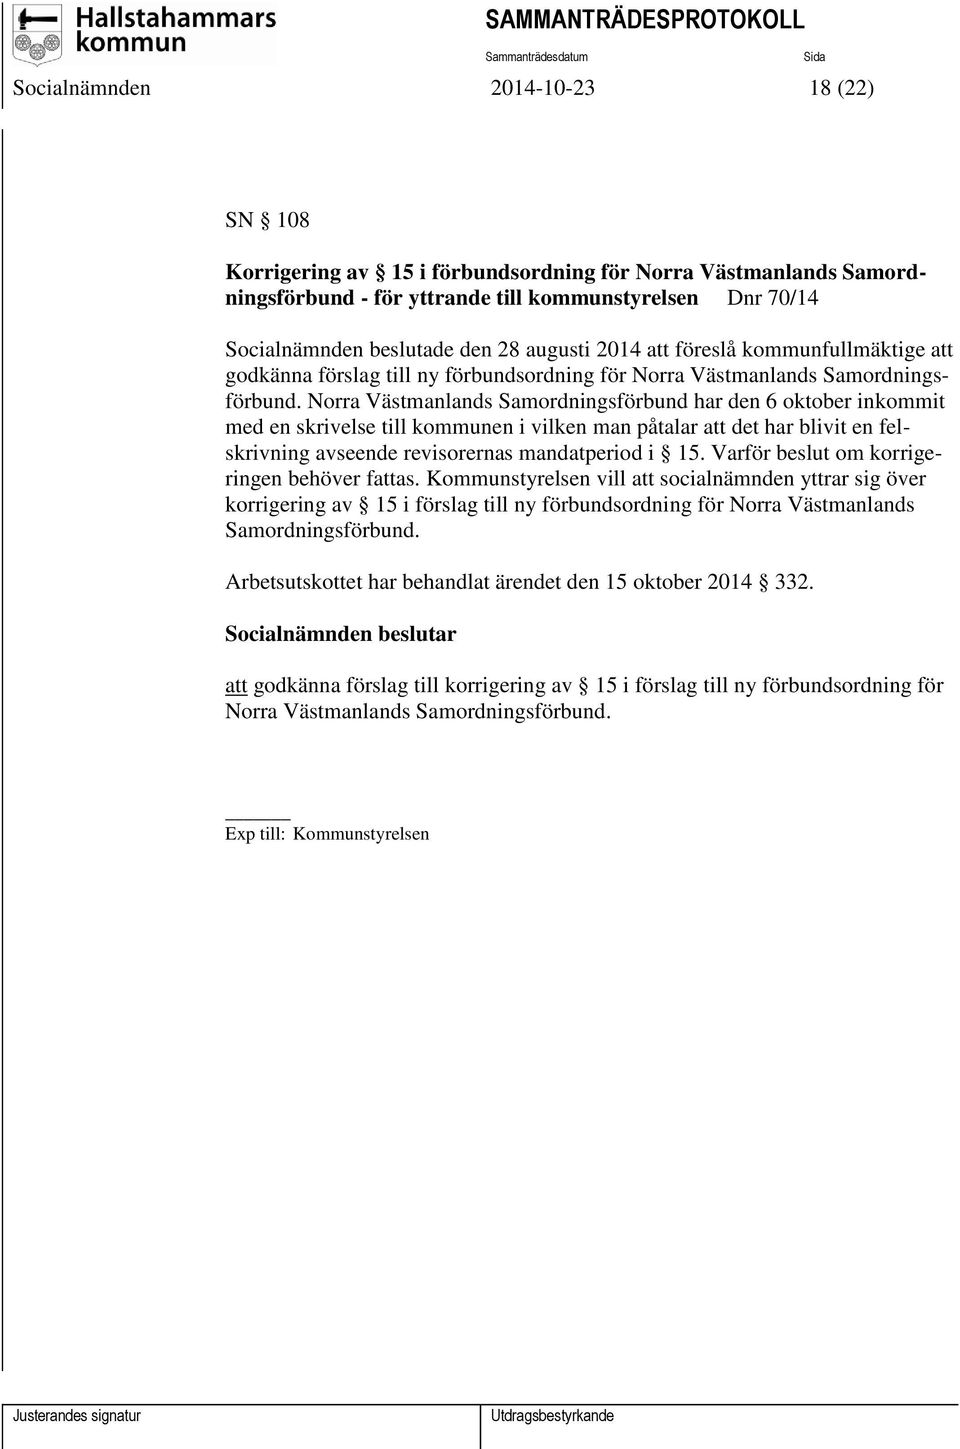 Norra Västmanlands Samordningsförbund har den 6 oktober inkommit med en skrivelse till kommunen i vilken man påtalar att det har blivit en felskrivning avseende revisorernas mandatperiod i 15.